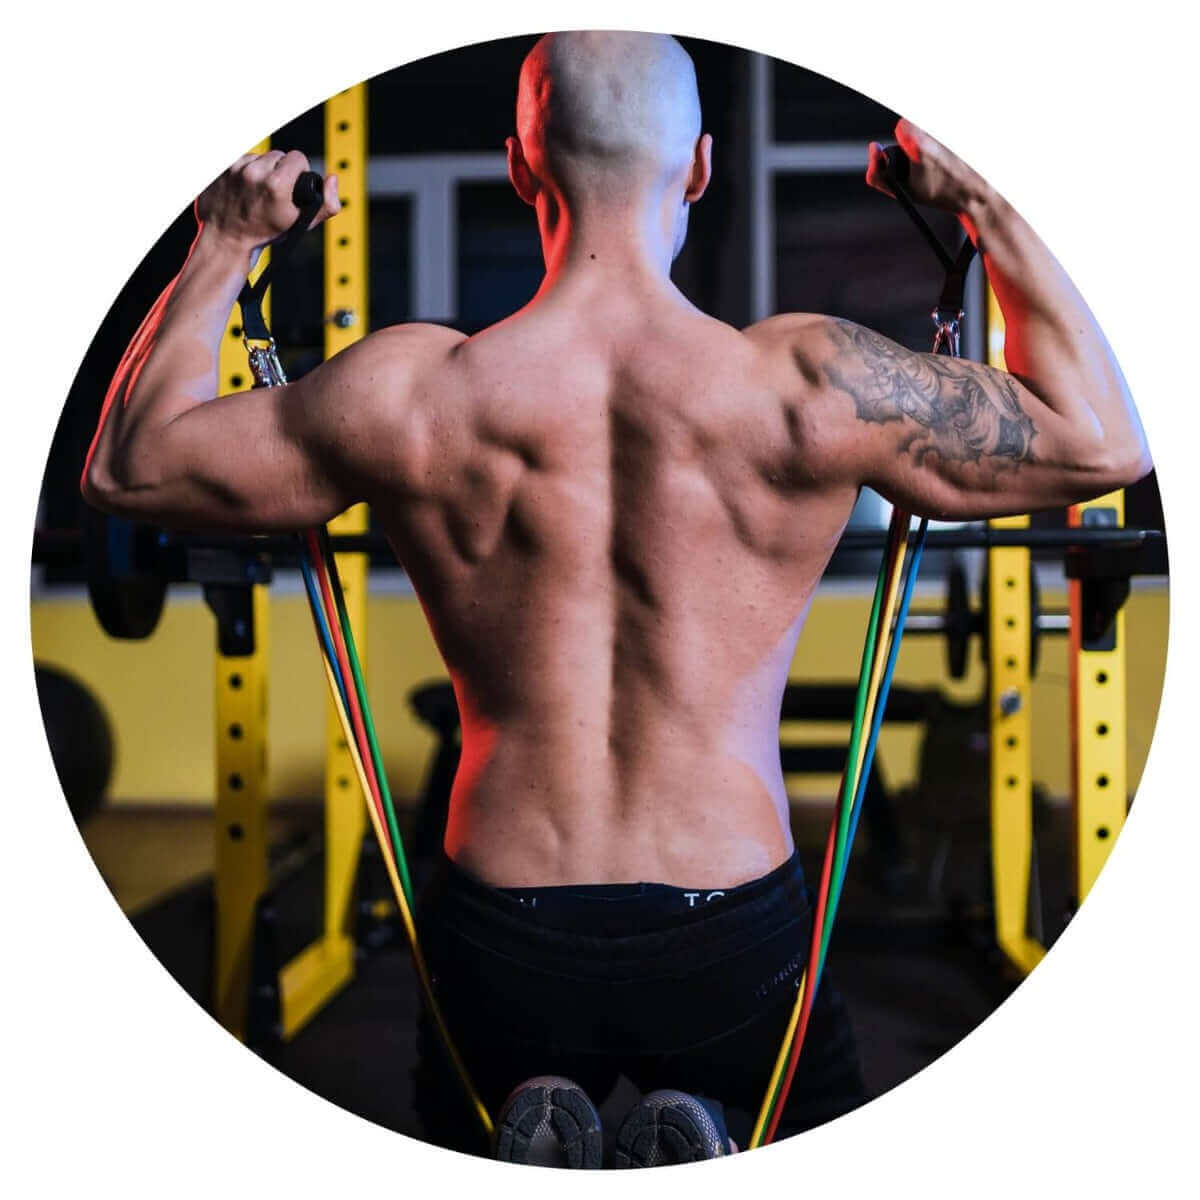 Resistance bands er perfekt til muskelopbygning og fedtforbrænding. Træning med fitness elastik gør kroppen stærk og tonet. Sættet indeholder 5 elastikker med håndtag. 1 sæt - lav pris